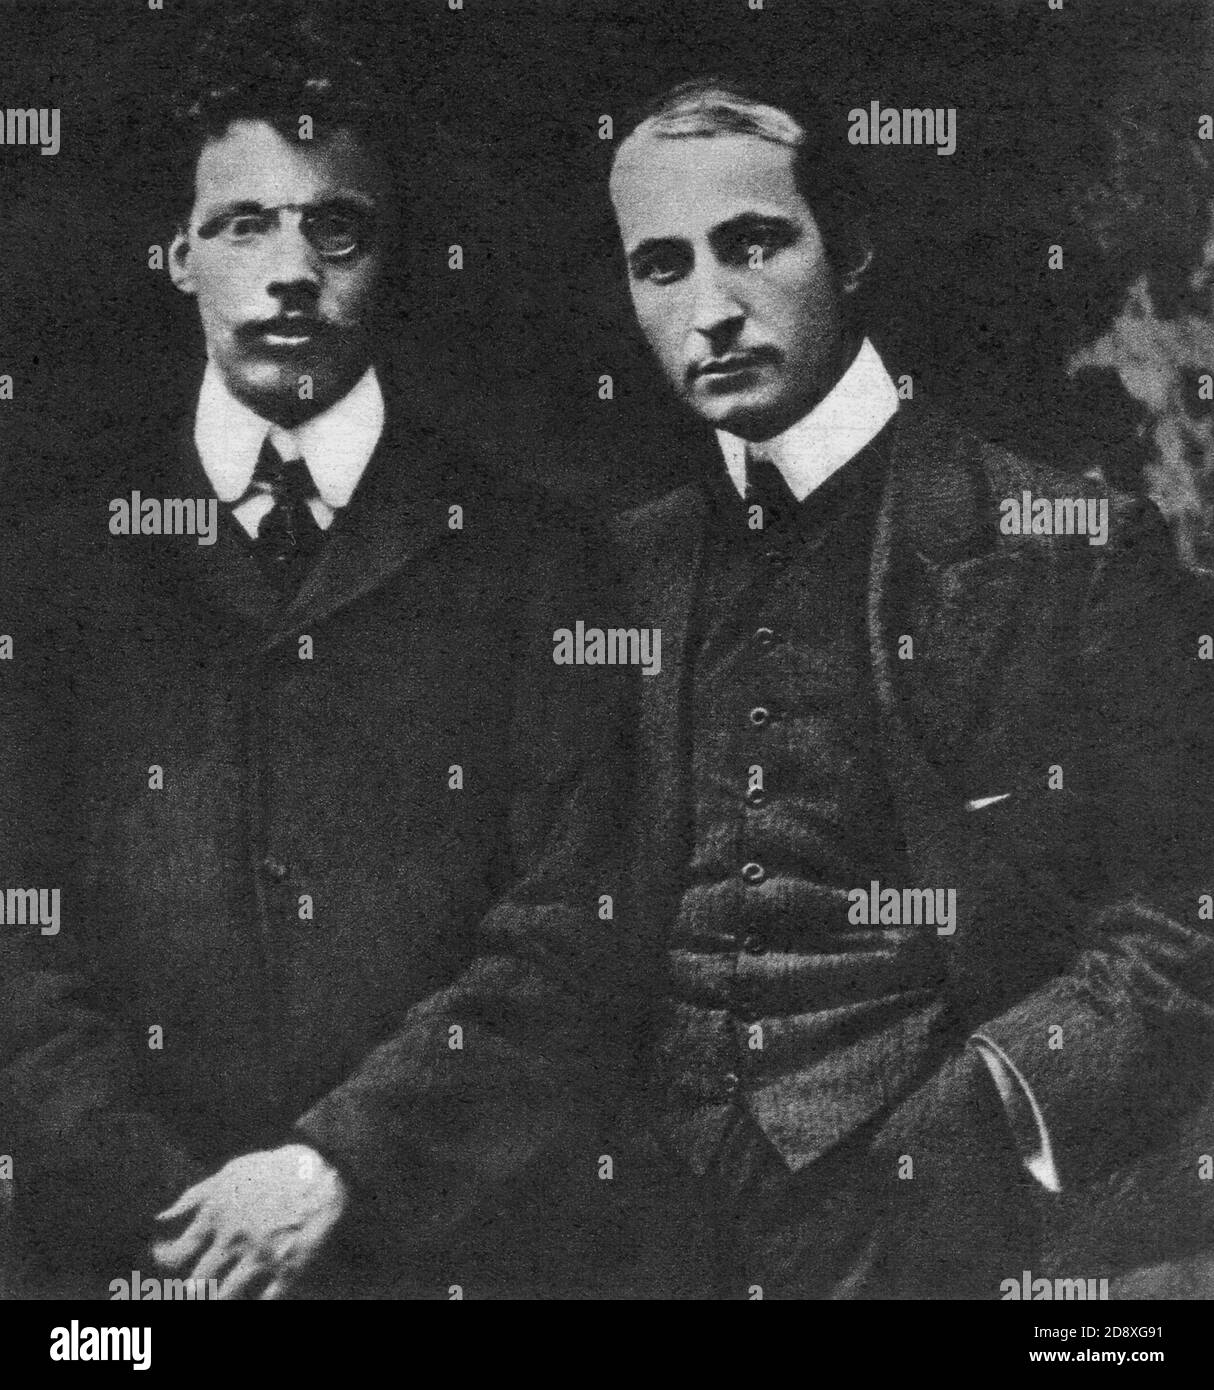 1904 , ITALIA : el célebre pintor y escritor italiano ARDENGO SOFFIFI ( 1879 - 1964 ) con el escritor GIOVANNI PAPIINI (1881 - 1956 ) , juntos fundaron las revistas literarias ' la Voce ' y ' Lacerba '- LITERATURA - LETTERATURA - POESIA - POESÍA ---- Archivio GBB Foto de stock